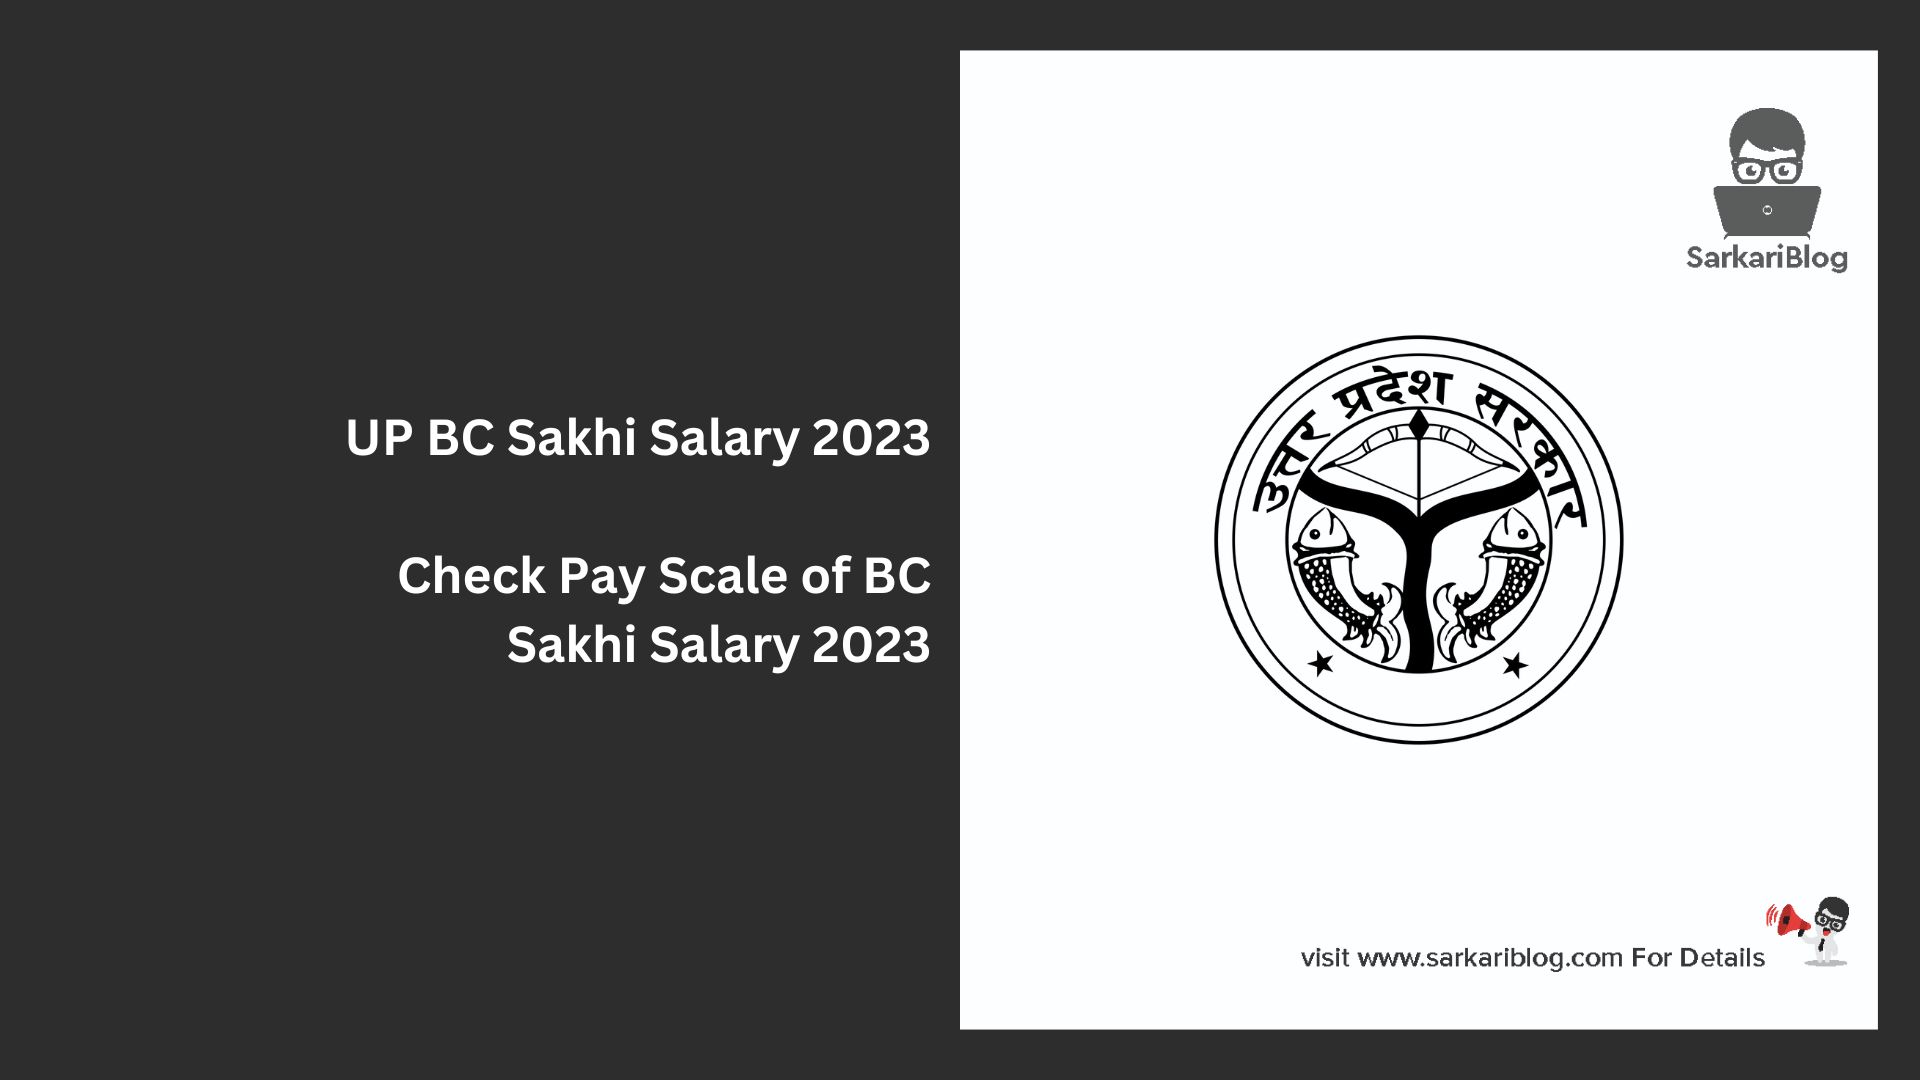 UP BC Sakhi Salary 2023